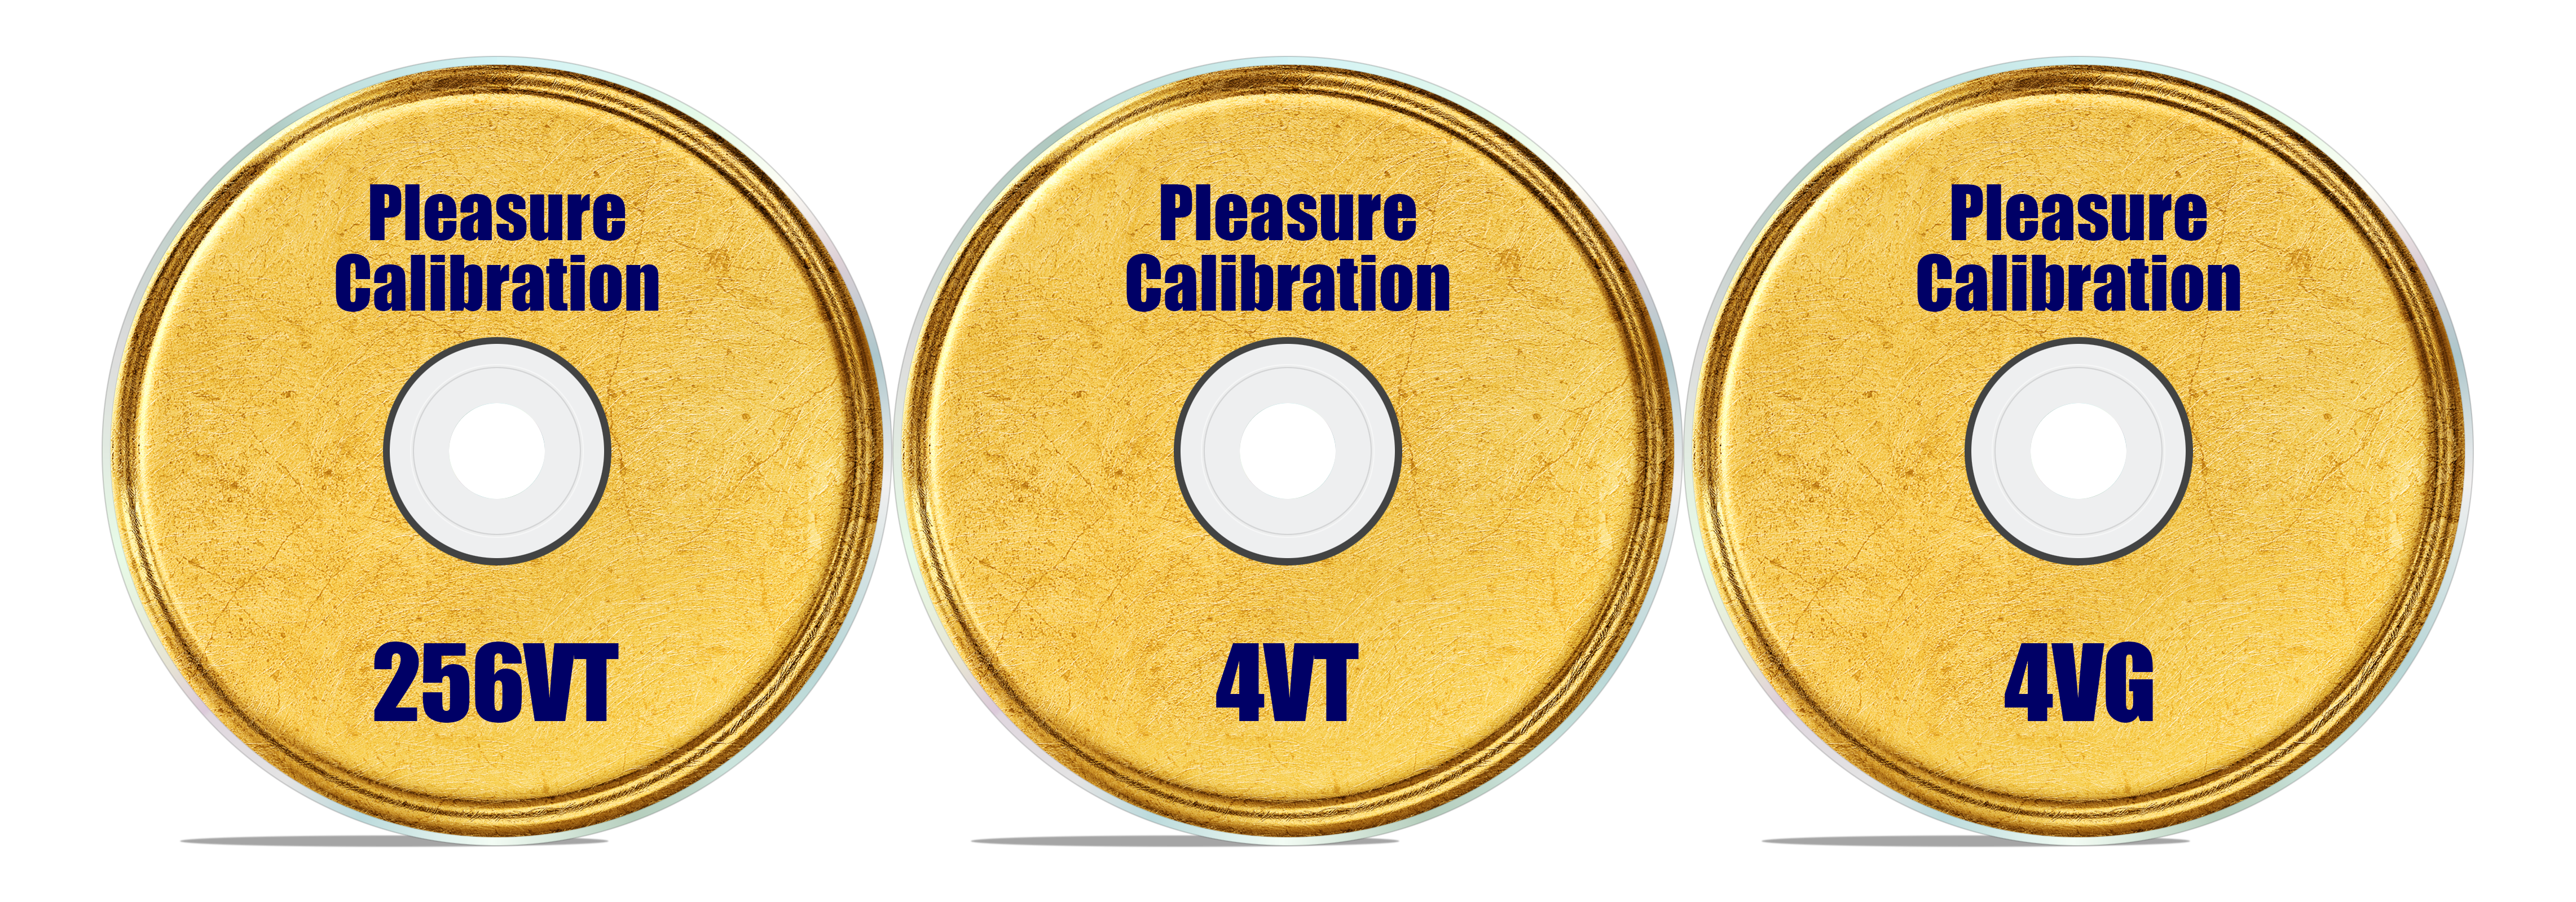 Pleasure Calibration